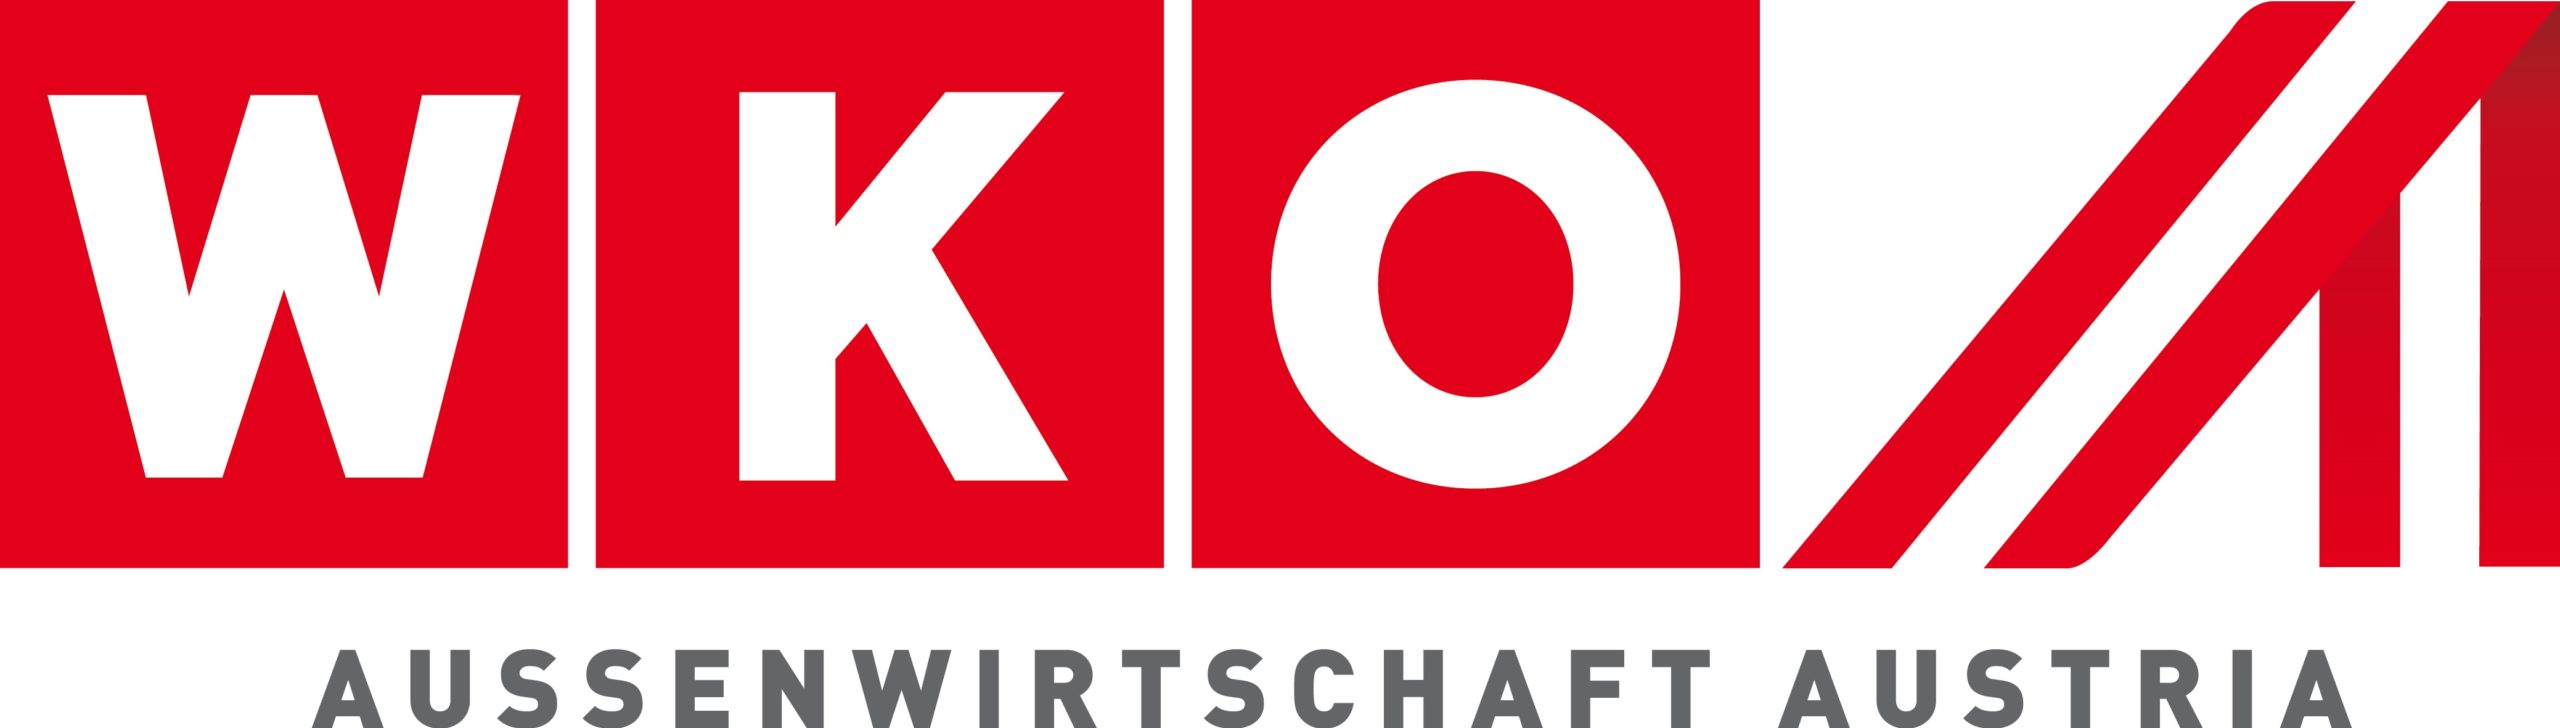 AUSSENWIRTSCHAFT AUSTRIA Logo